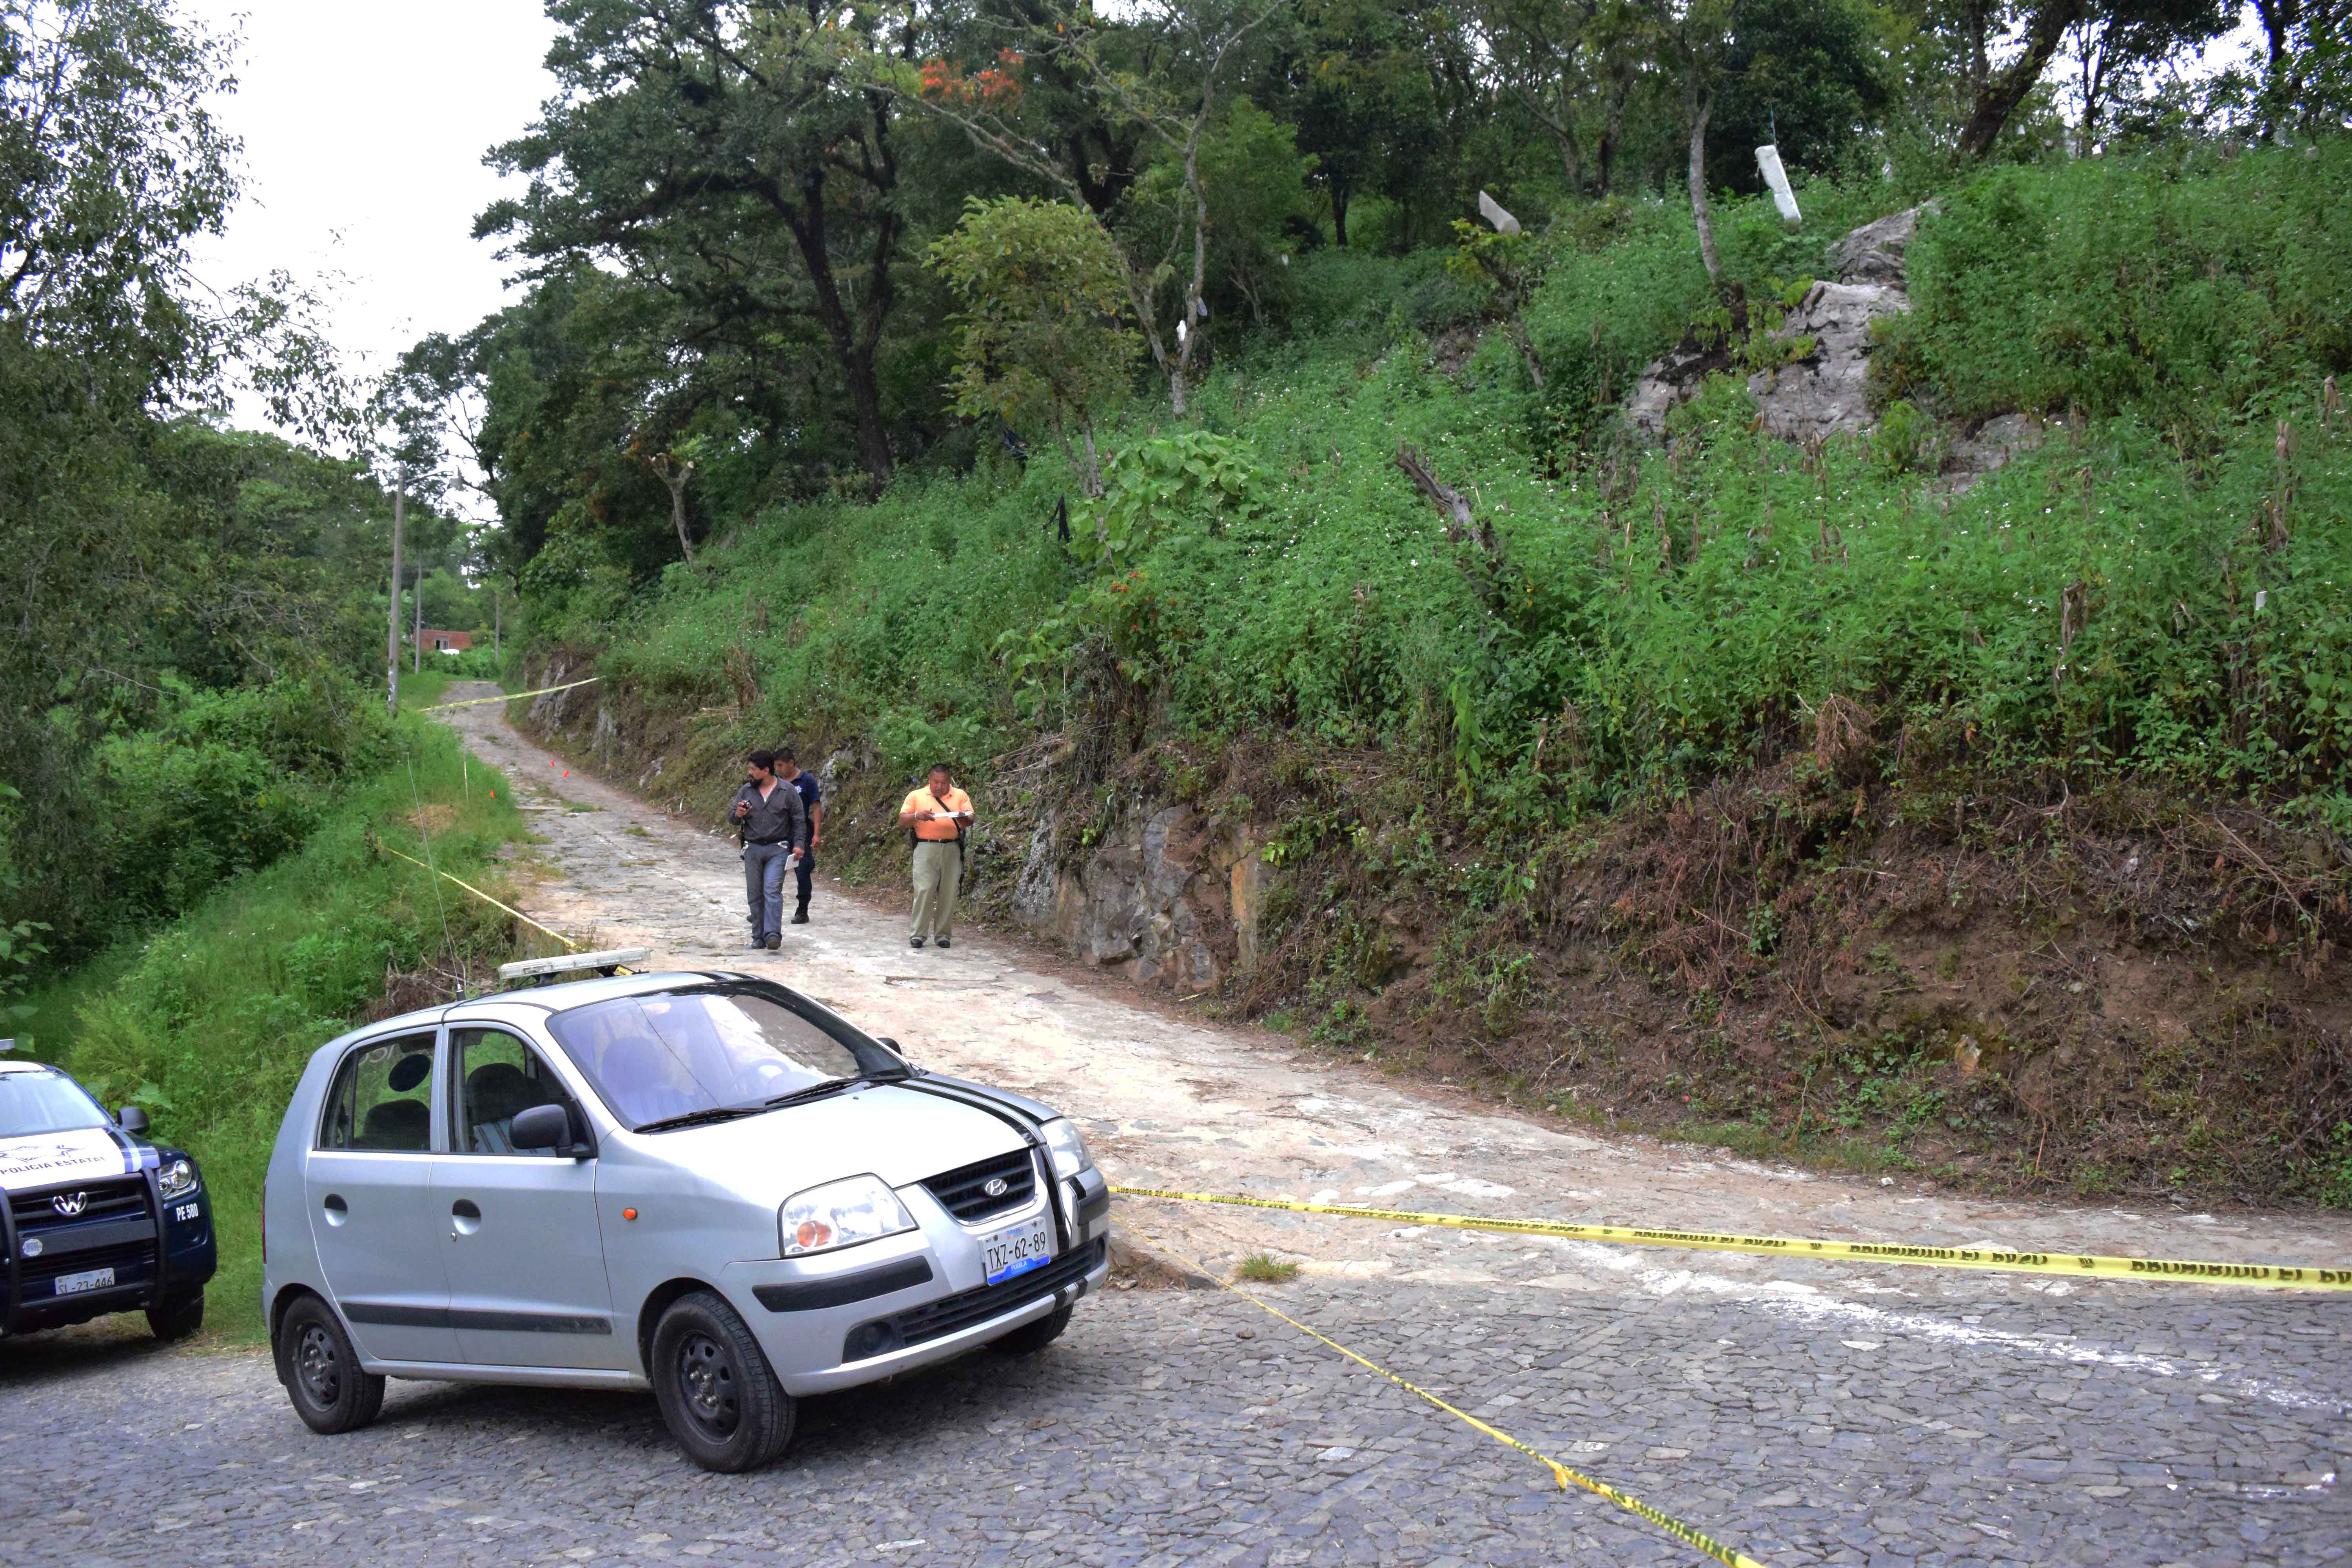 Estalla polvorín y muere persona en Xochitlán de Vicente Suárez